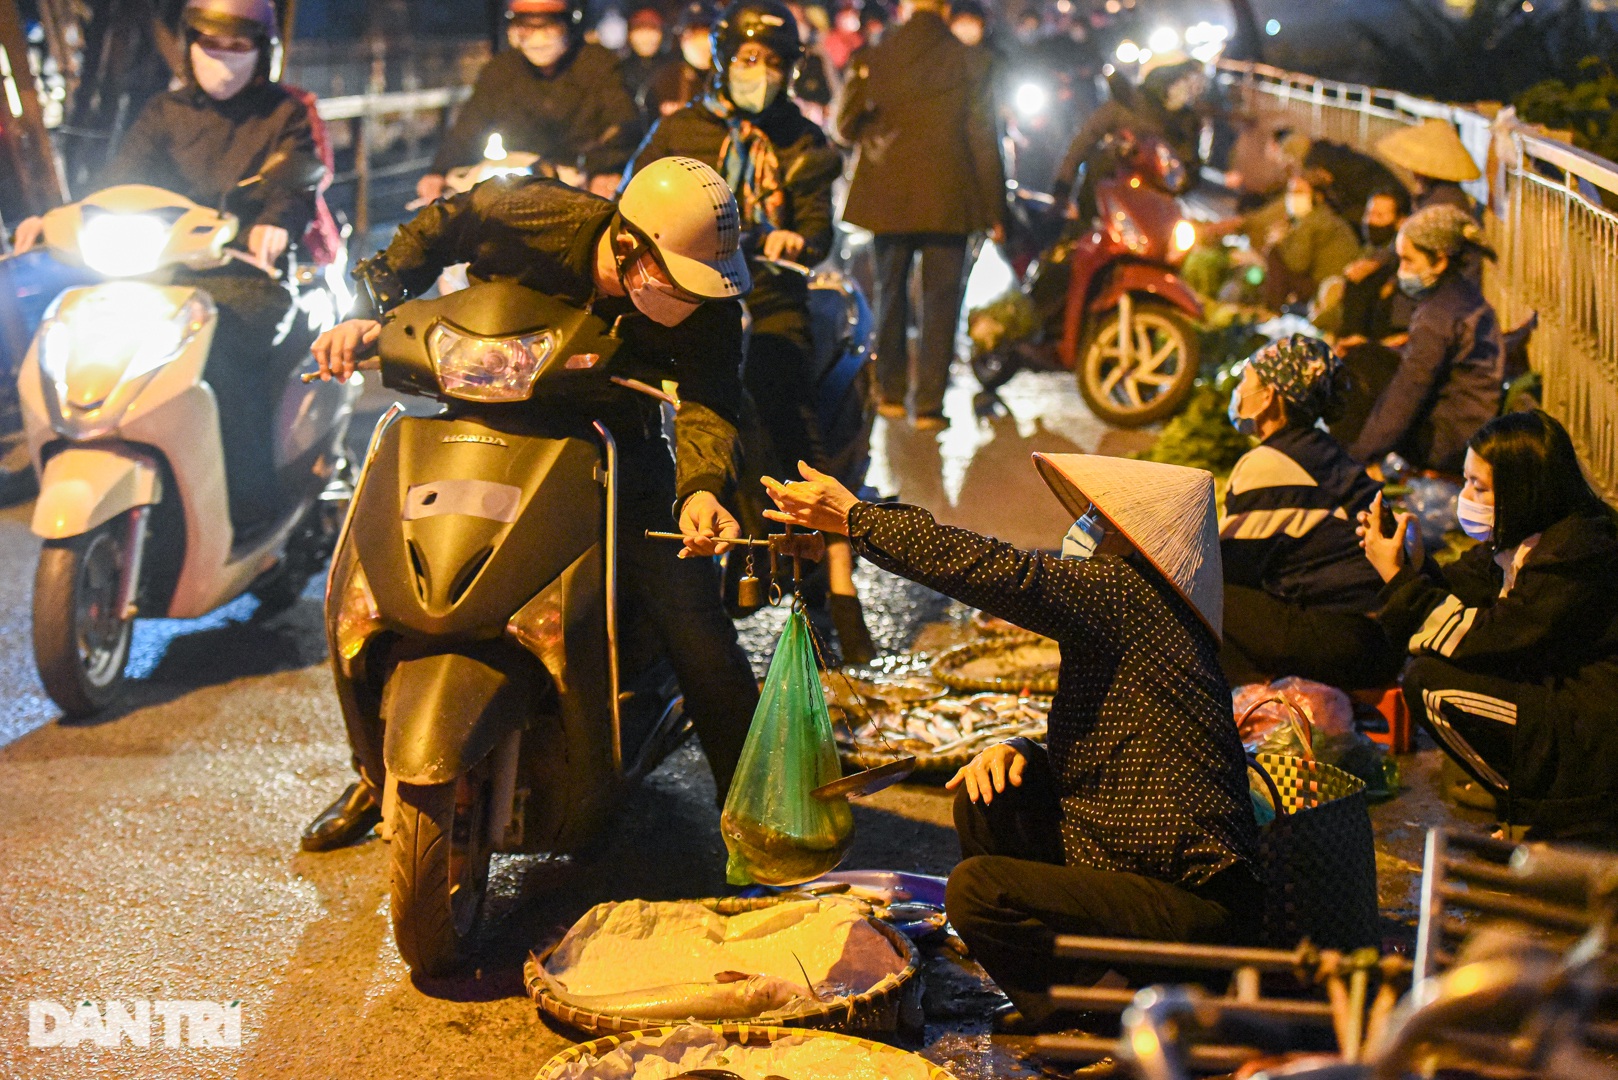 Cảnh họp chợ lộn xộn, giao thông ùn ứ trên cây cầu trăm tuổi ở Hà Nội - 8